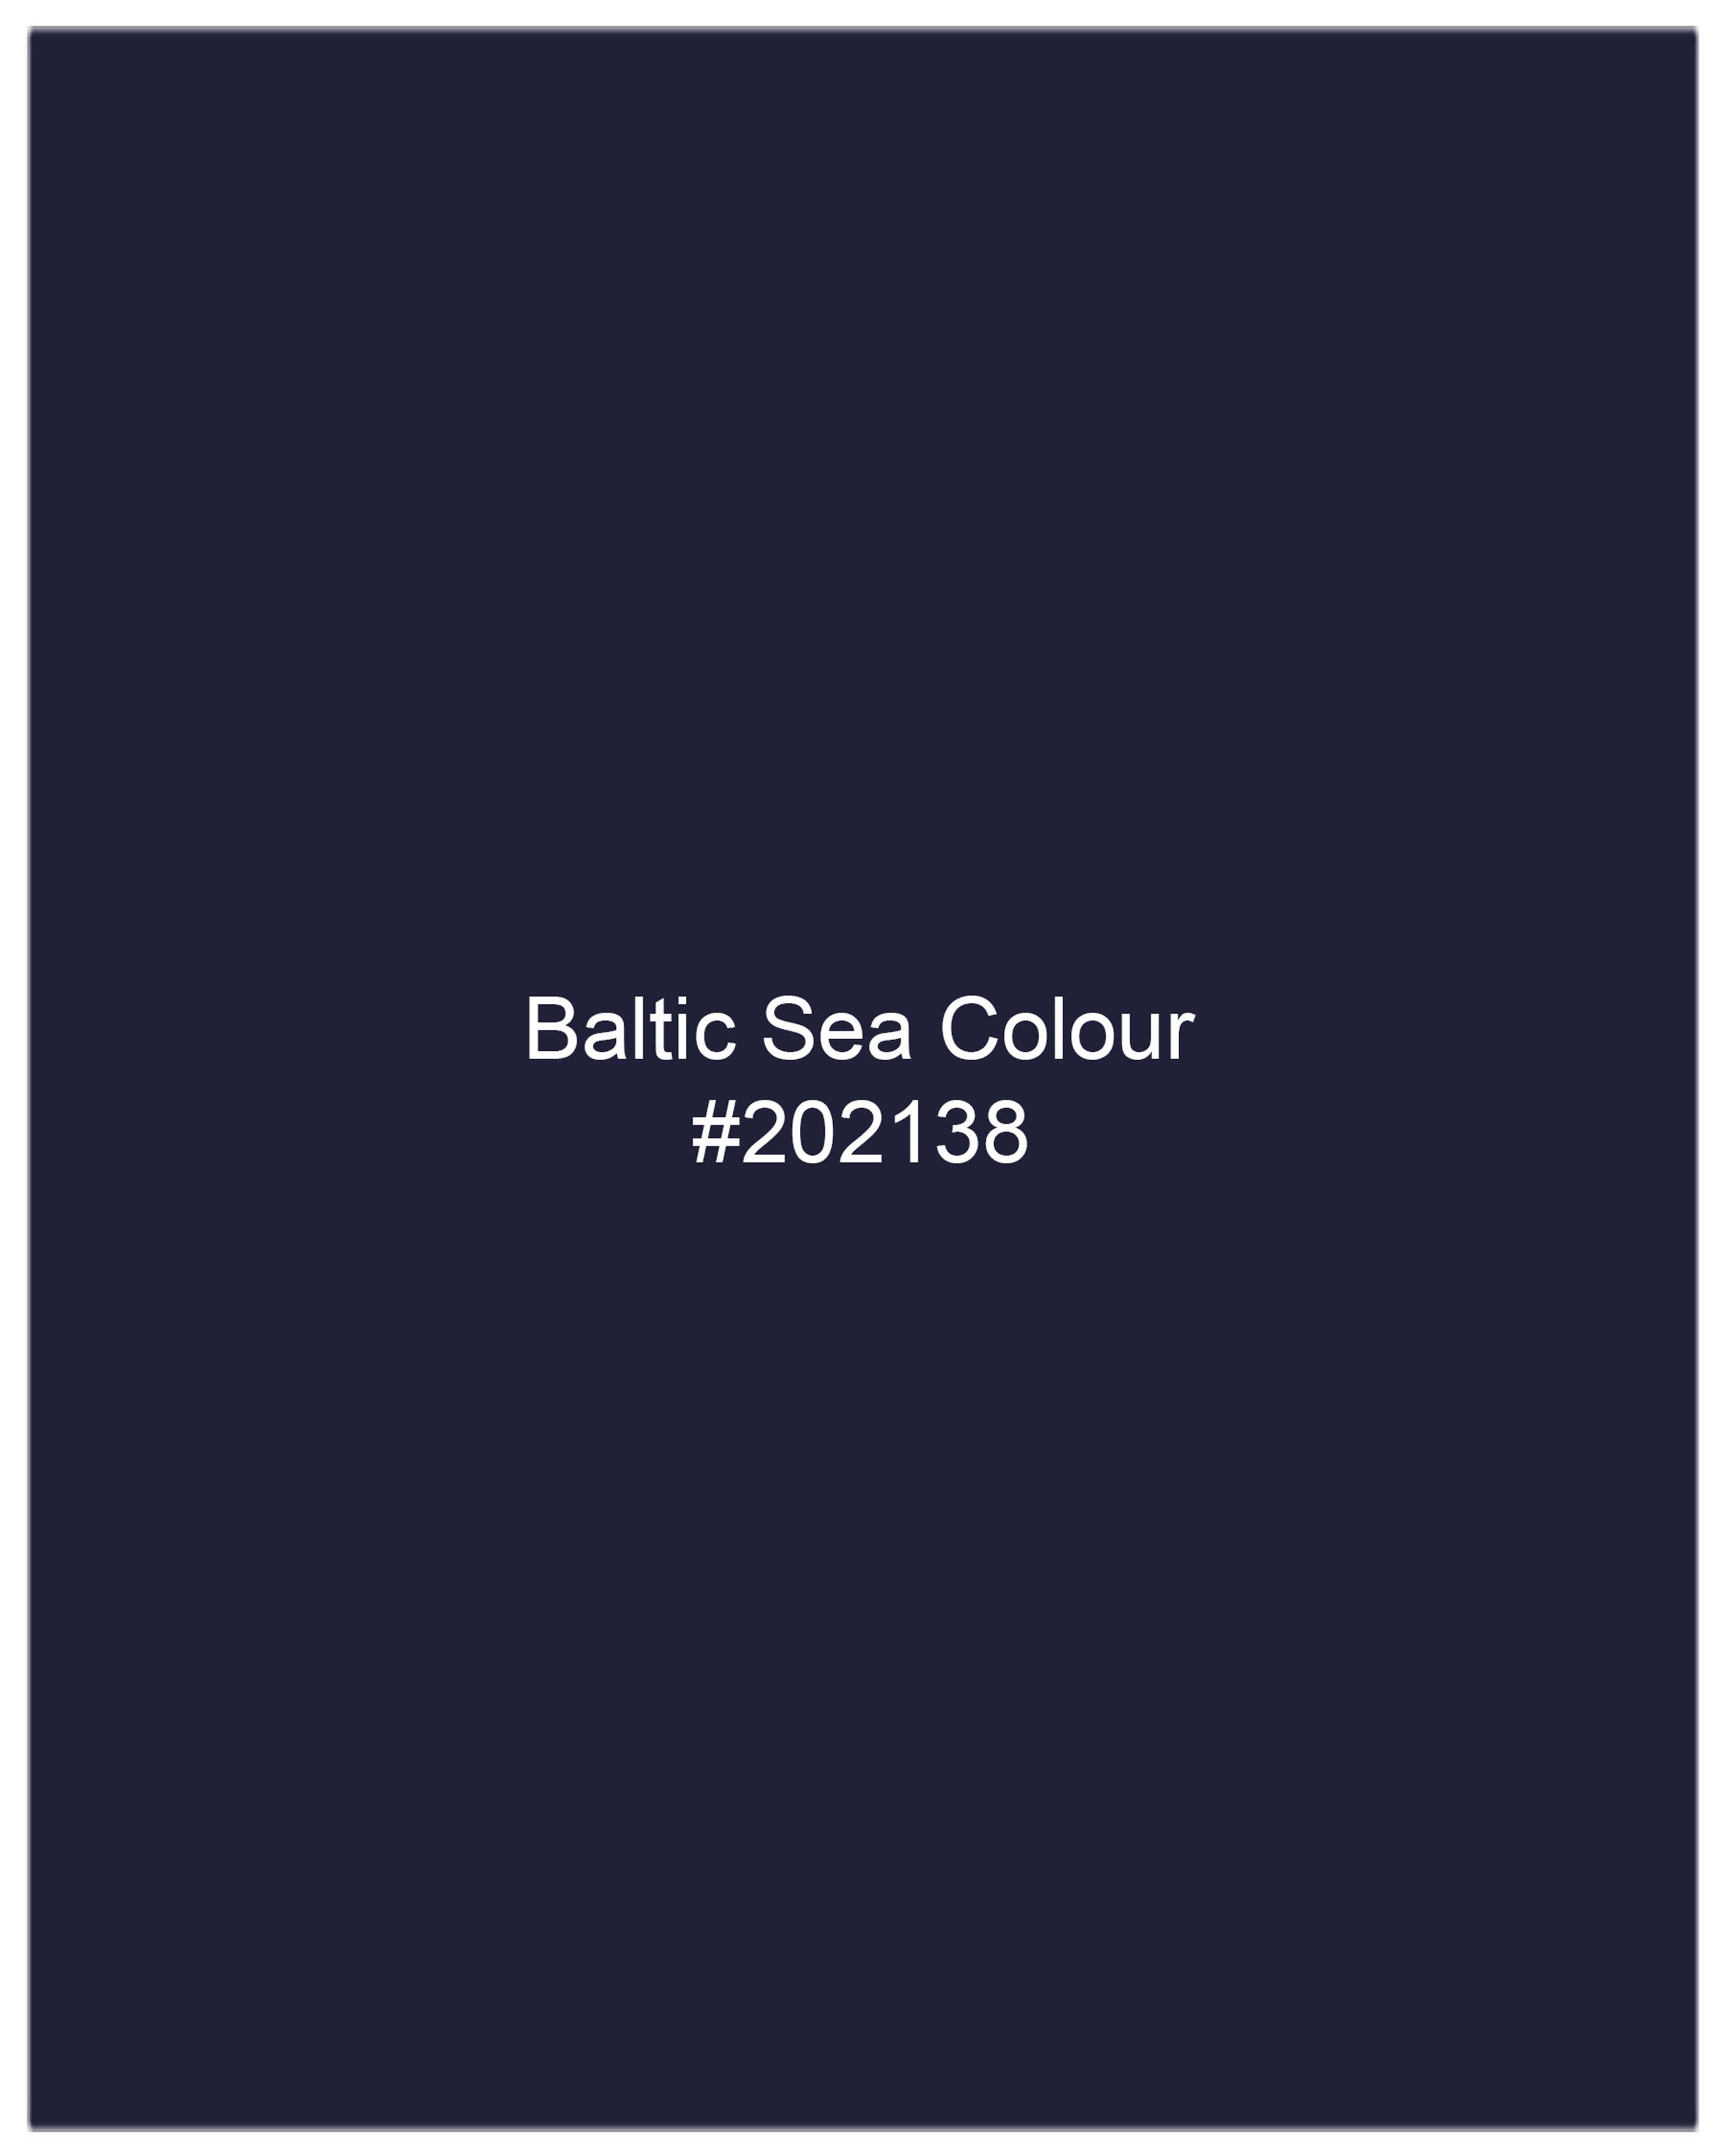 Baltic Sea Blue Windowpane Cross Buttoned Bandhgala Blazer BL2072-CBG2-36, BL2072-CBG2-38, BL2072-CBG2-40, BL2072-CBG2-42, BL2072-CBG2-44, BL2072-CBG2-46, BL2072-CBG2-48, BL2072-CBG2-50, BL2072-CBG2-52, BL2072-CBG2-54, BL2072-CBG2-56, BL2072-CBG2-58, BL2072-CBG2-60